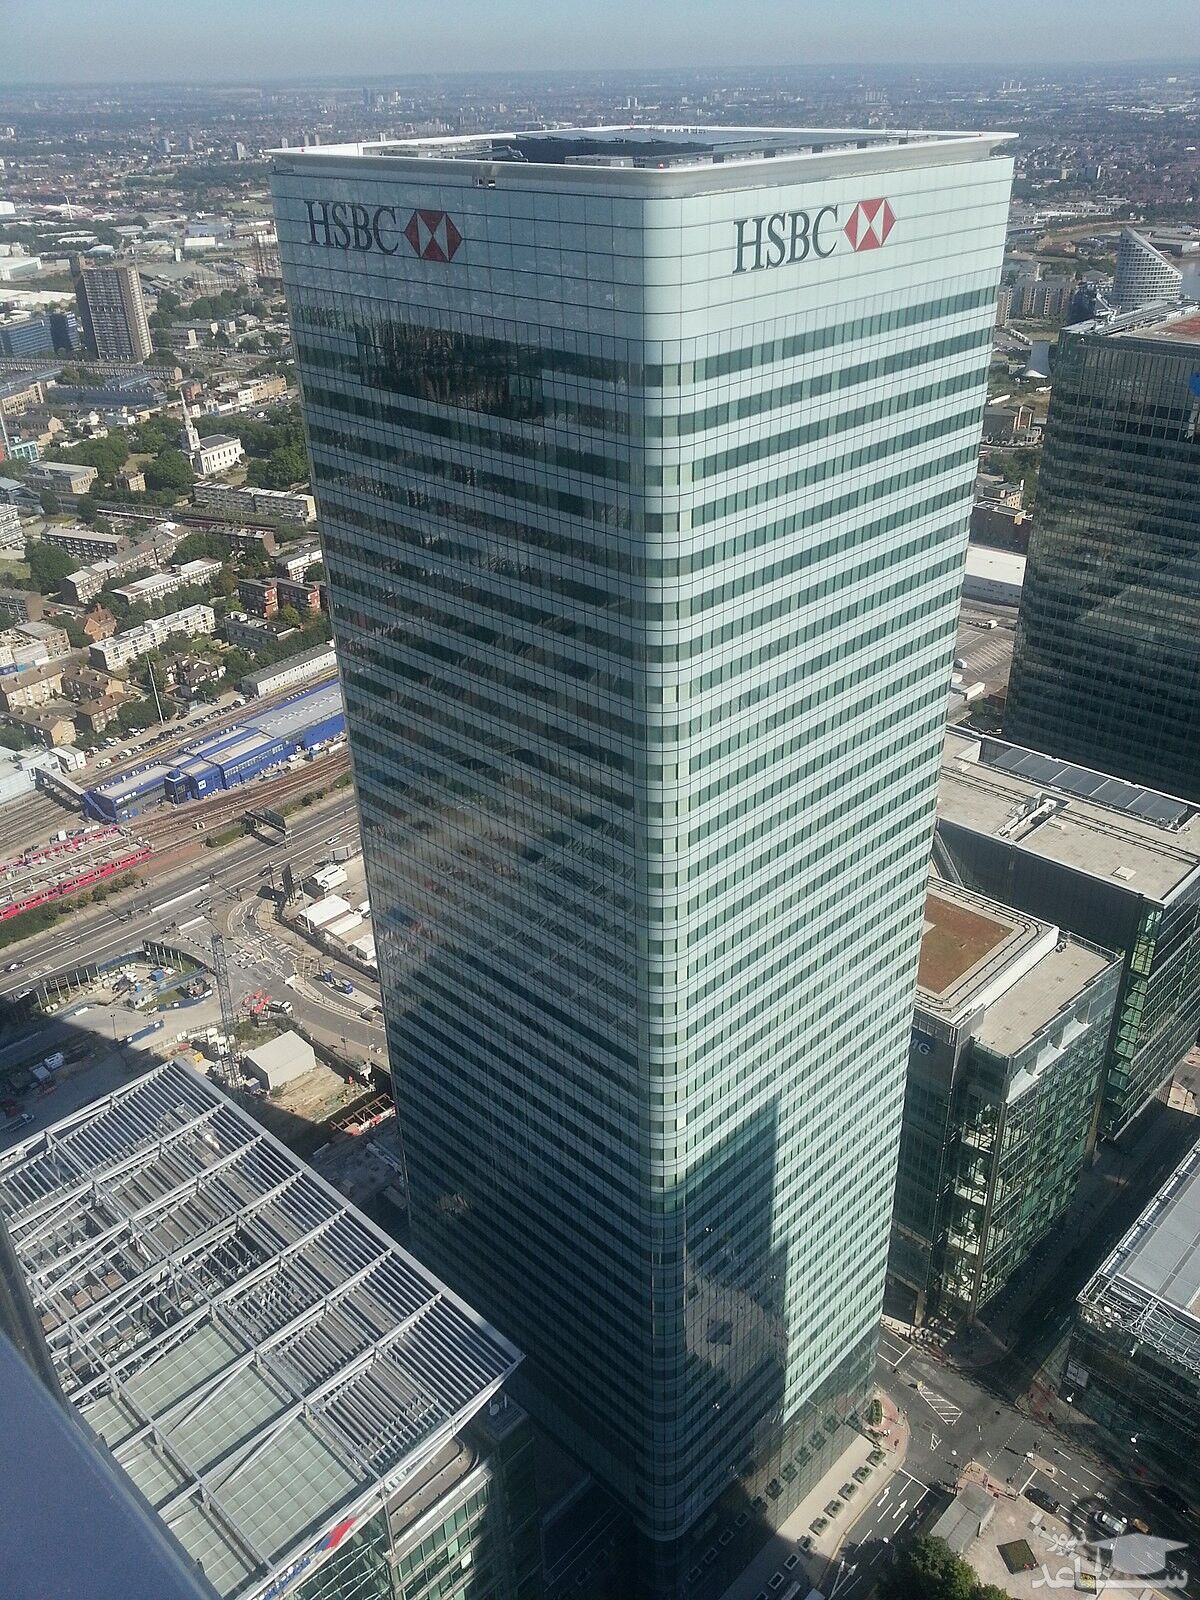 شعبه مرکزی بانک HSBC در لندن